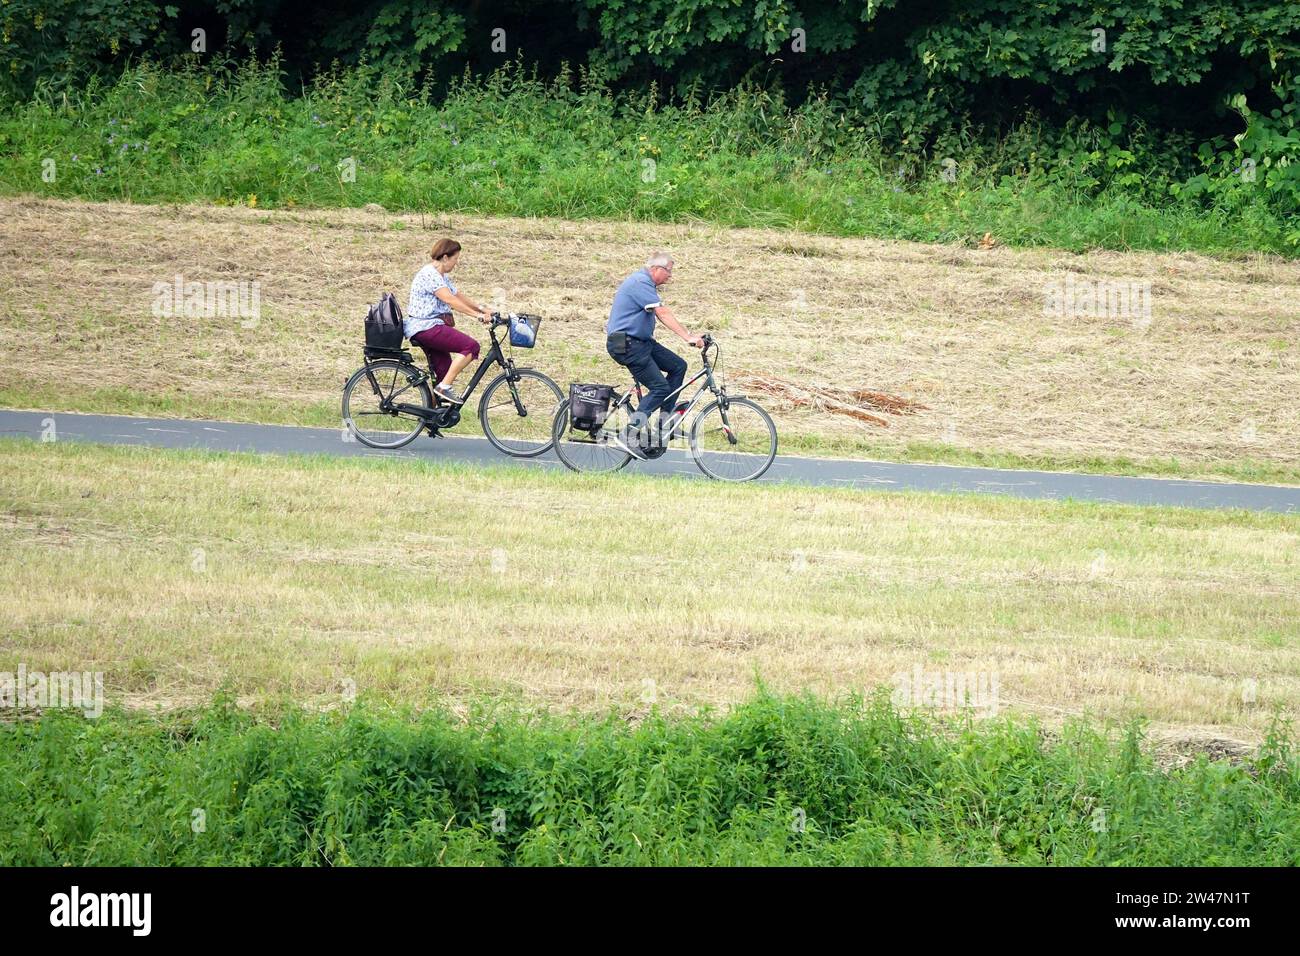 Ein älteres Ehepaar auf Fahrrädern fährt auf einem Radweg mitten auf einer gemähten Wiese Stockfoto